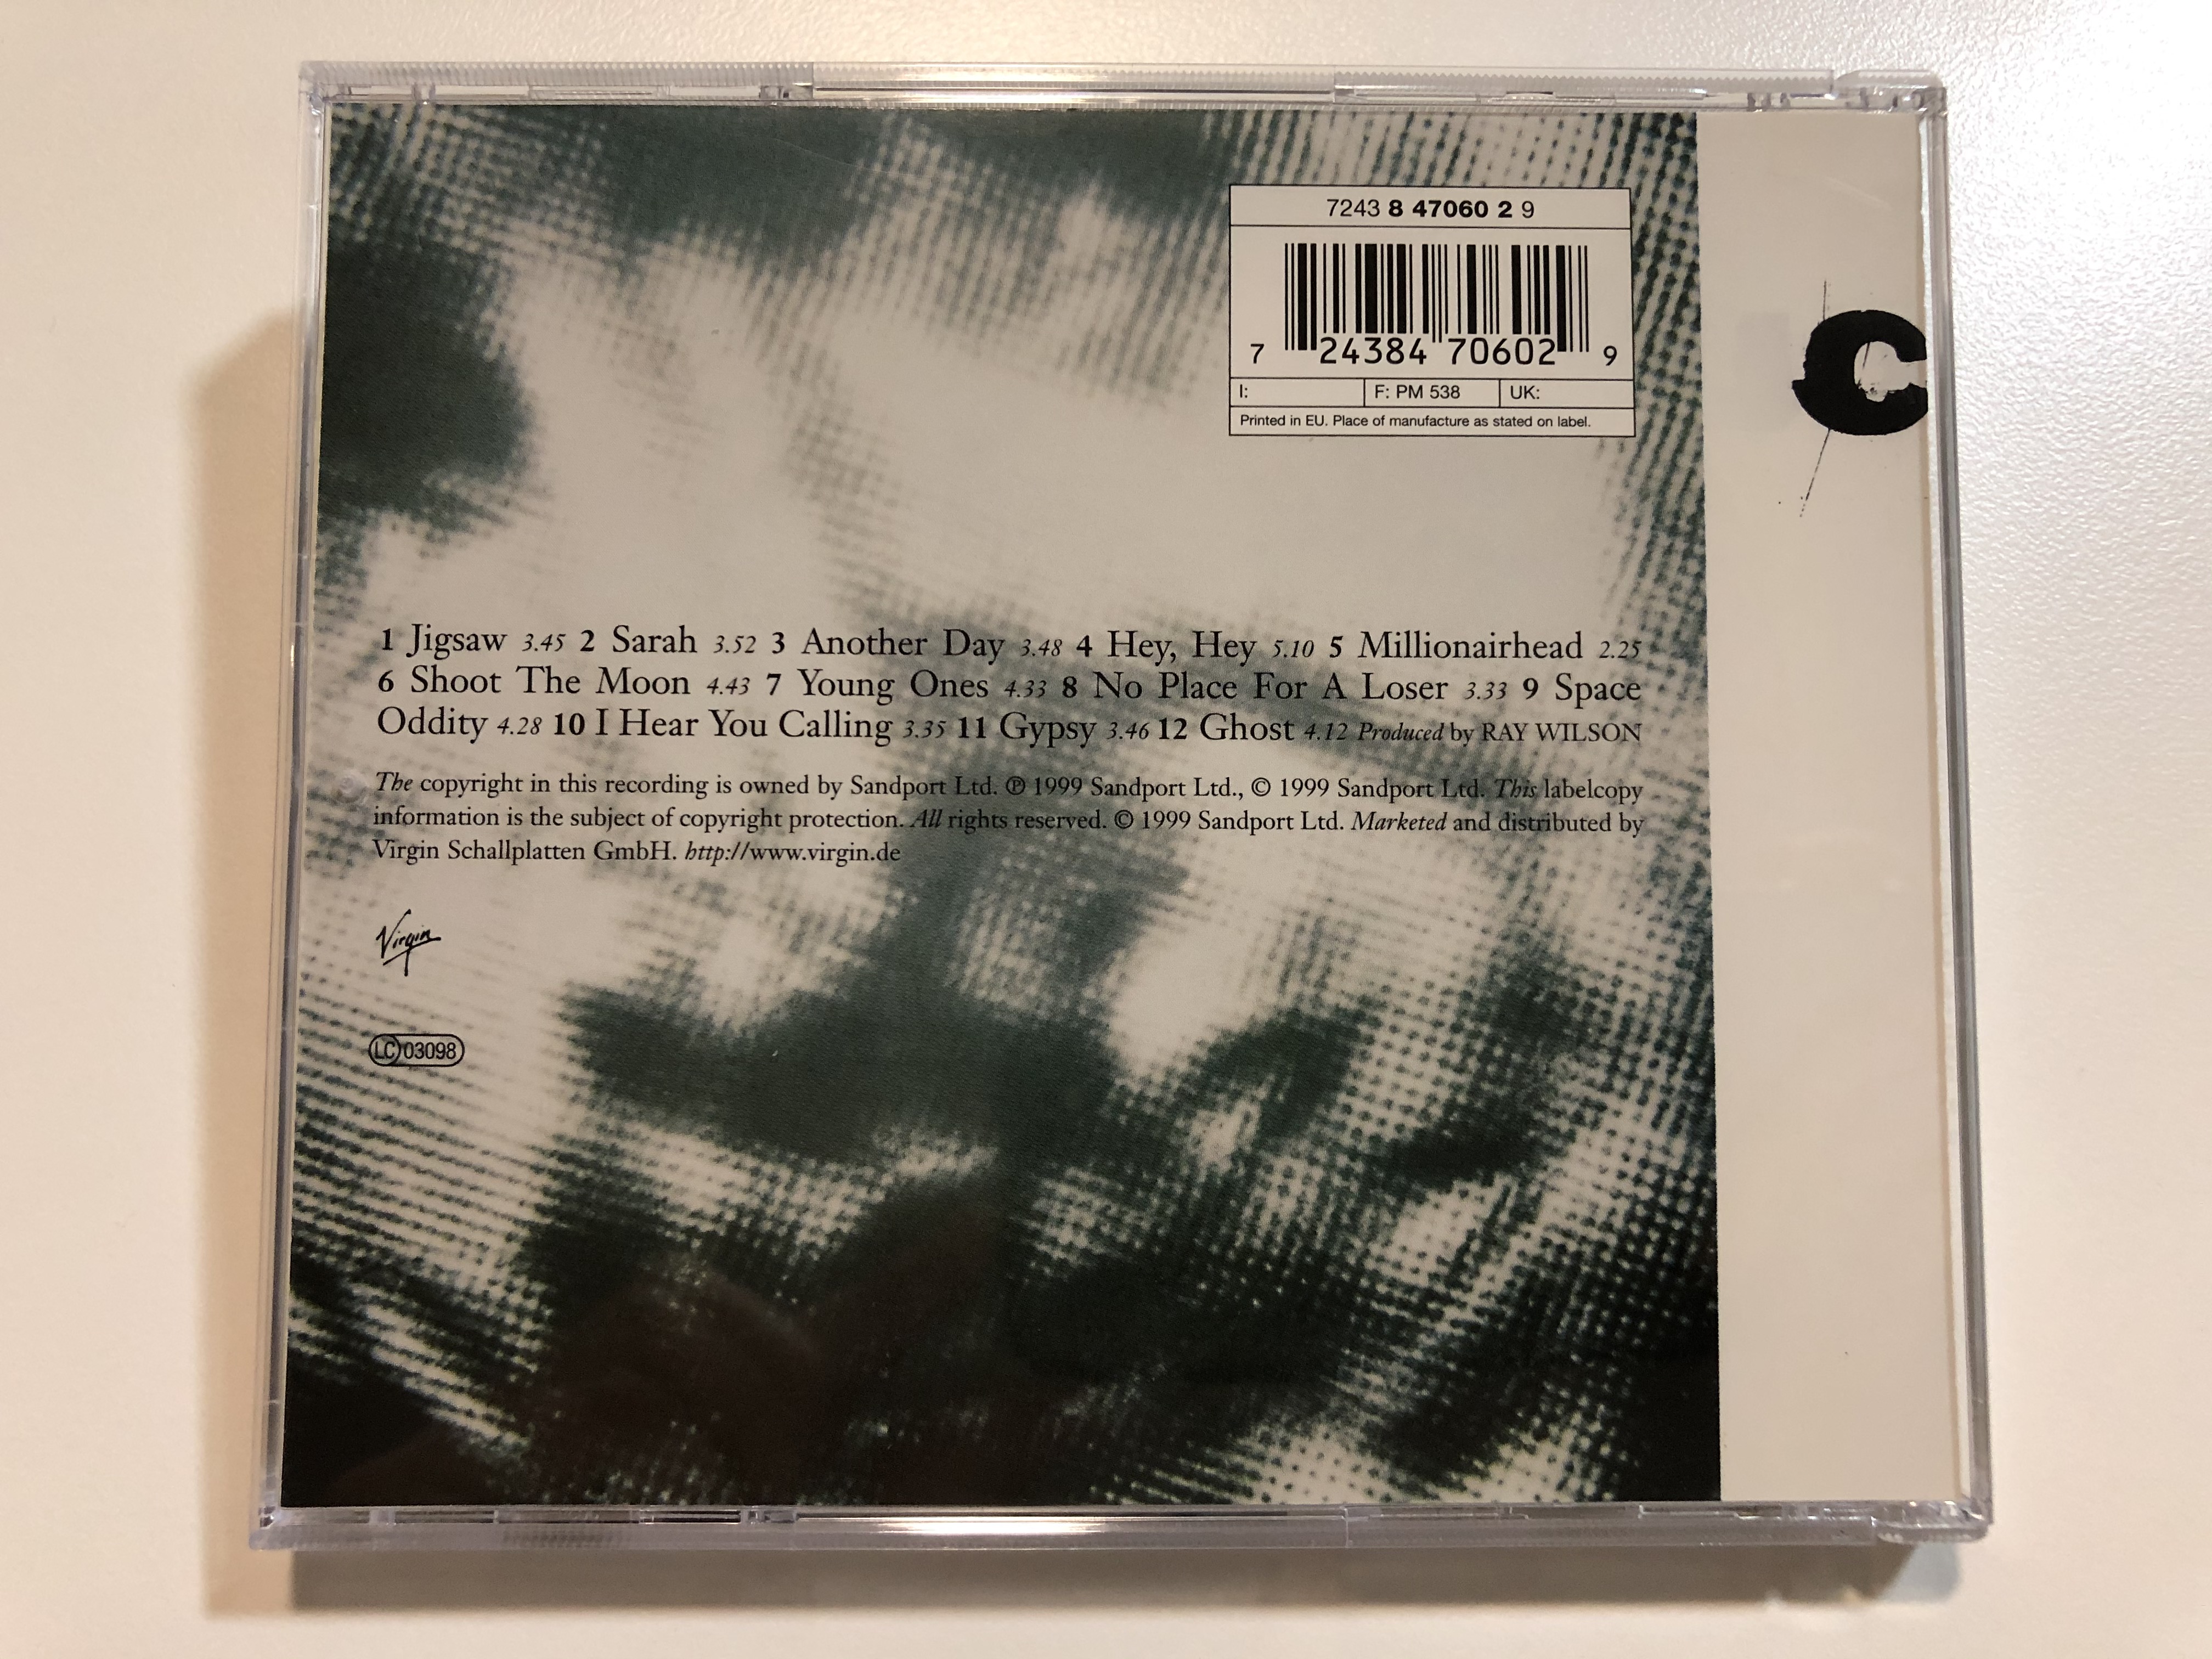 cut-millionairhead-virgin-audio-cd-1999-724384706029-6-.jpg